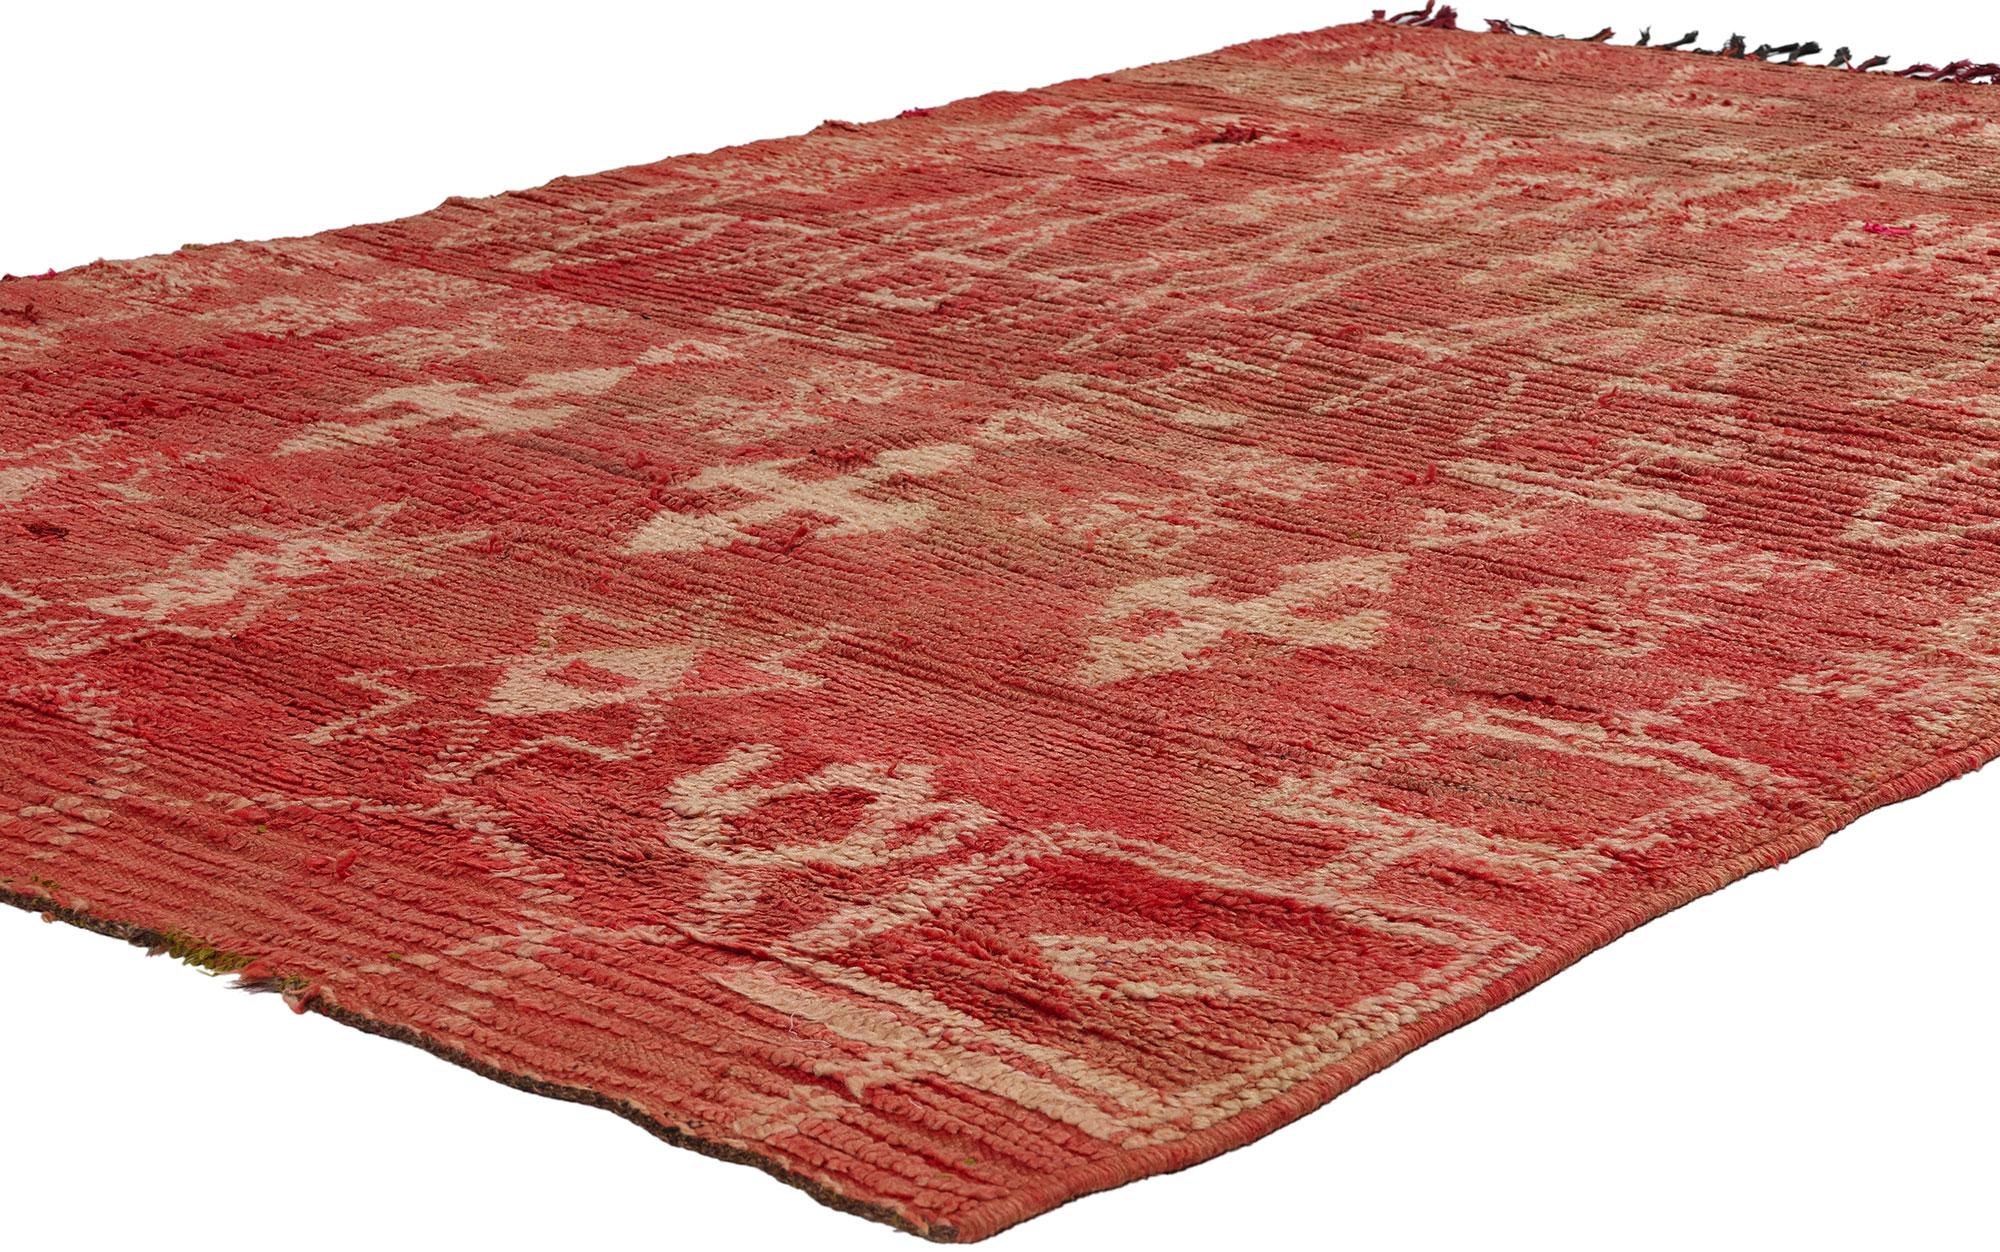 21814 Tapis marocain Boujad rouge vintage, 05'00 x 07'06. Issus de la région du Boujad au Maroc, les tapis Boujad sont d'exquis chefs-d'œuvre tissés à la main, profondément enracinés dans les traditions des tribus berbères telles que les Haouz et